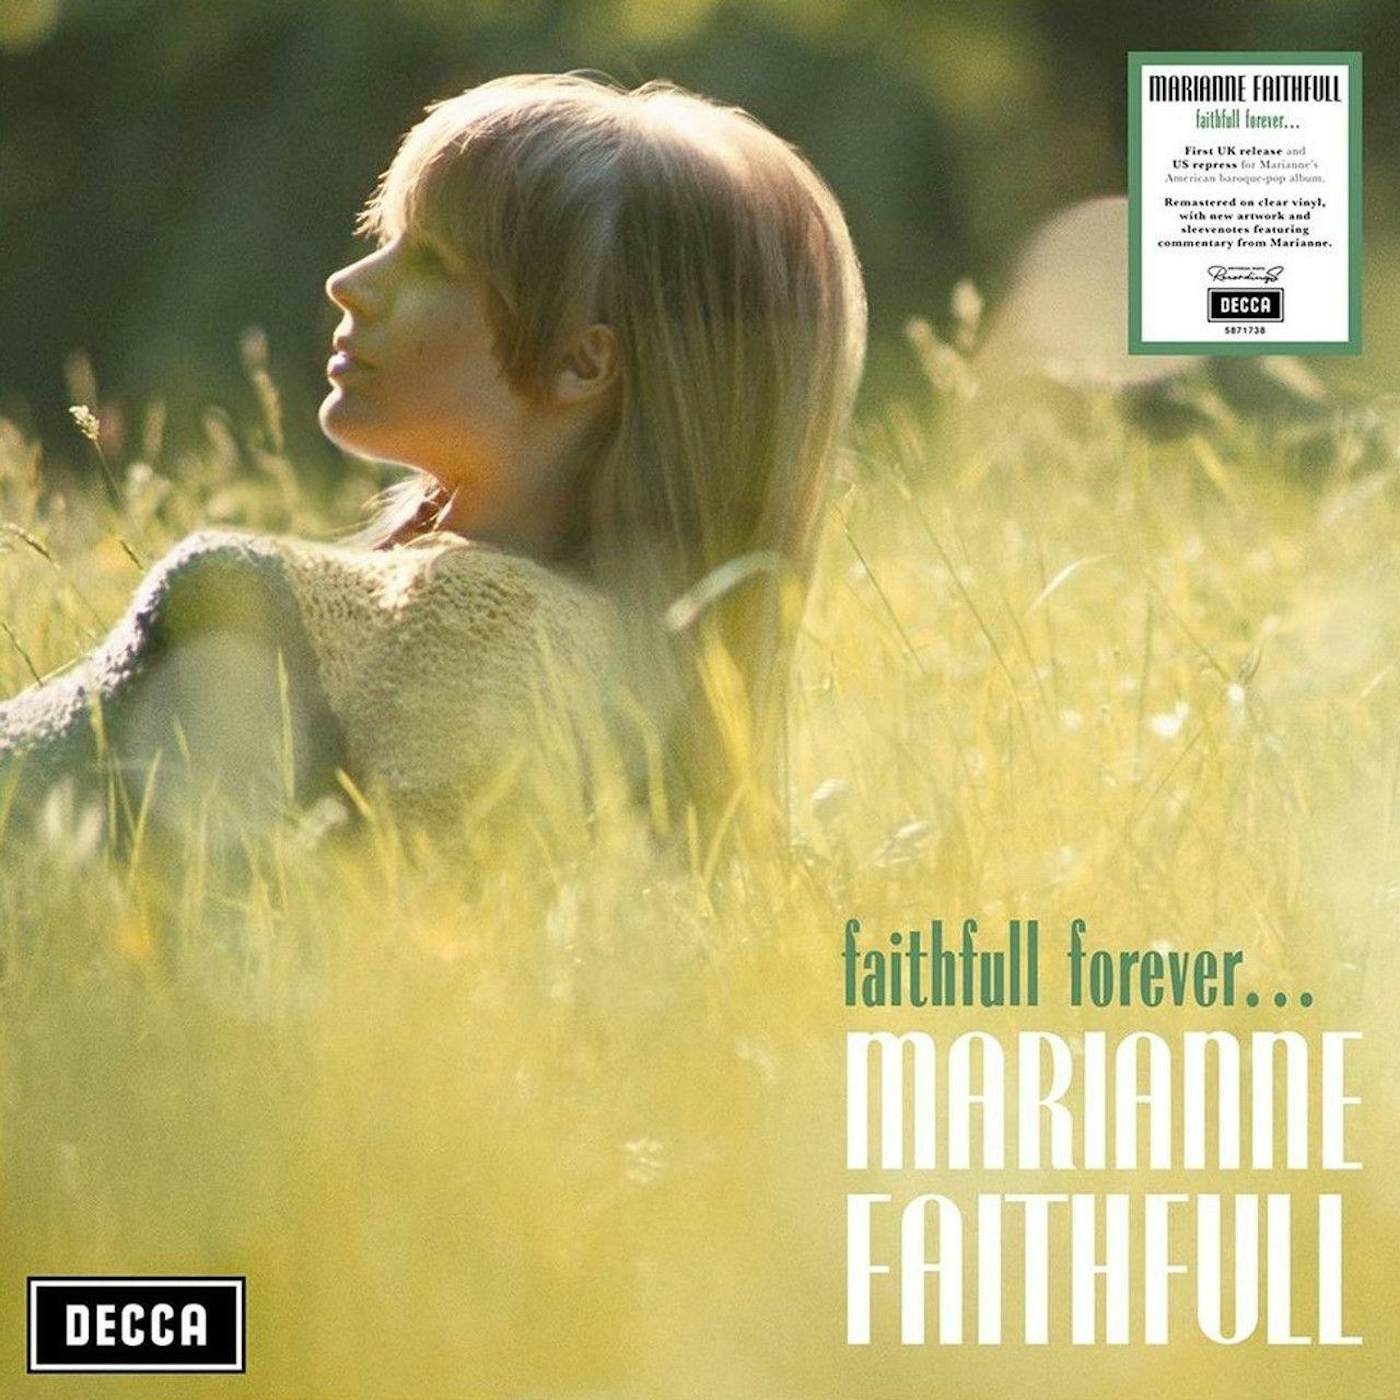 Marianne Faithfull Faithfull Forever (Clear) Vinyl Record